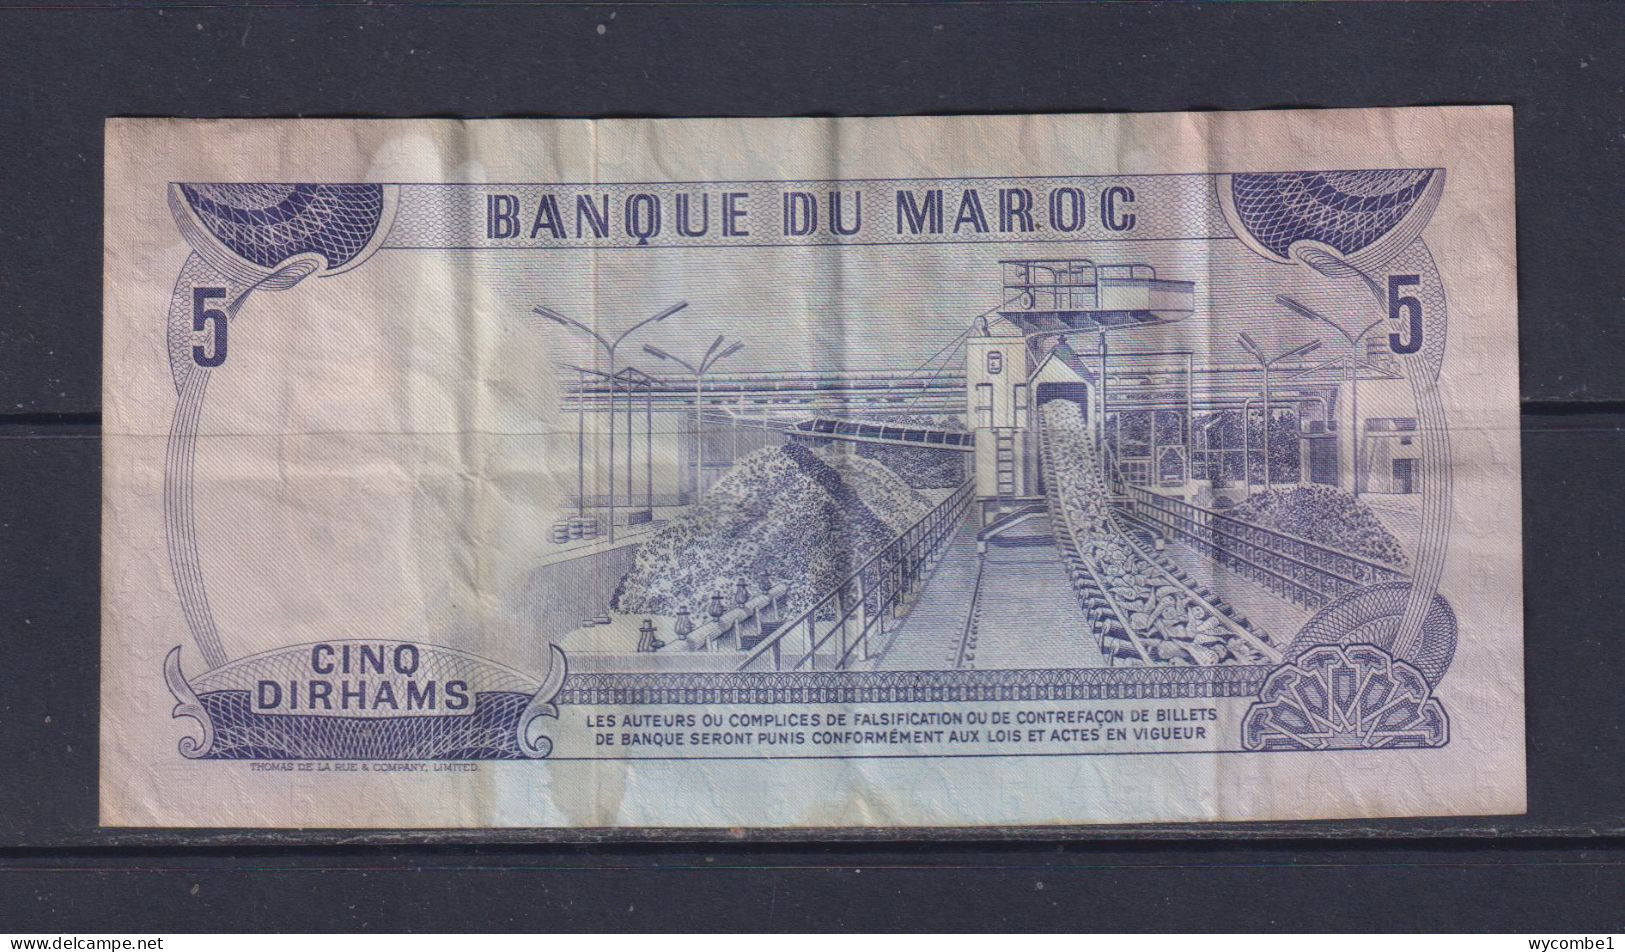 MOROCCO  - 1970 5 Dirhams Circulated Banknote - Marokko